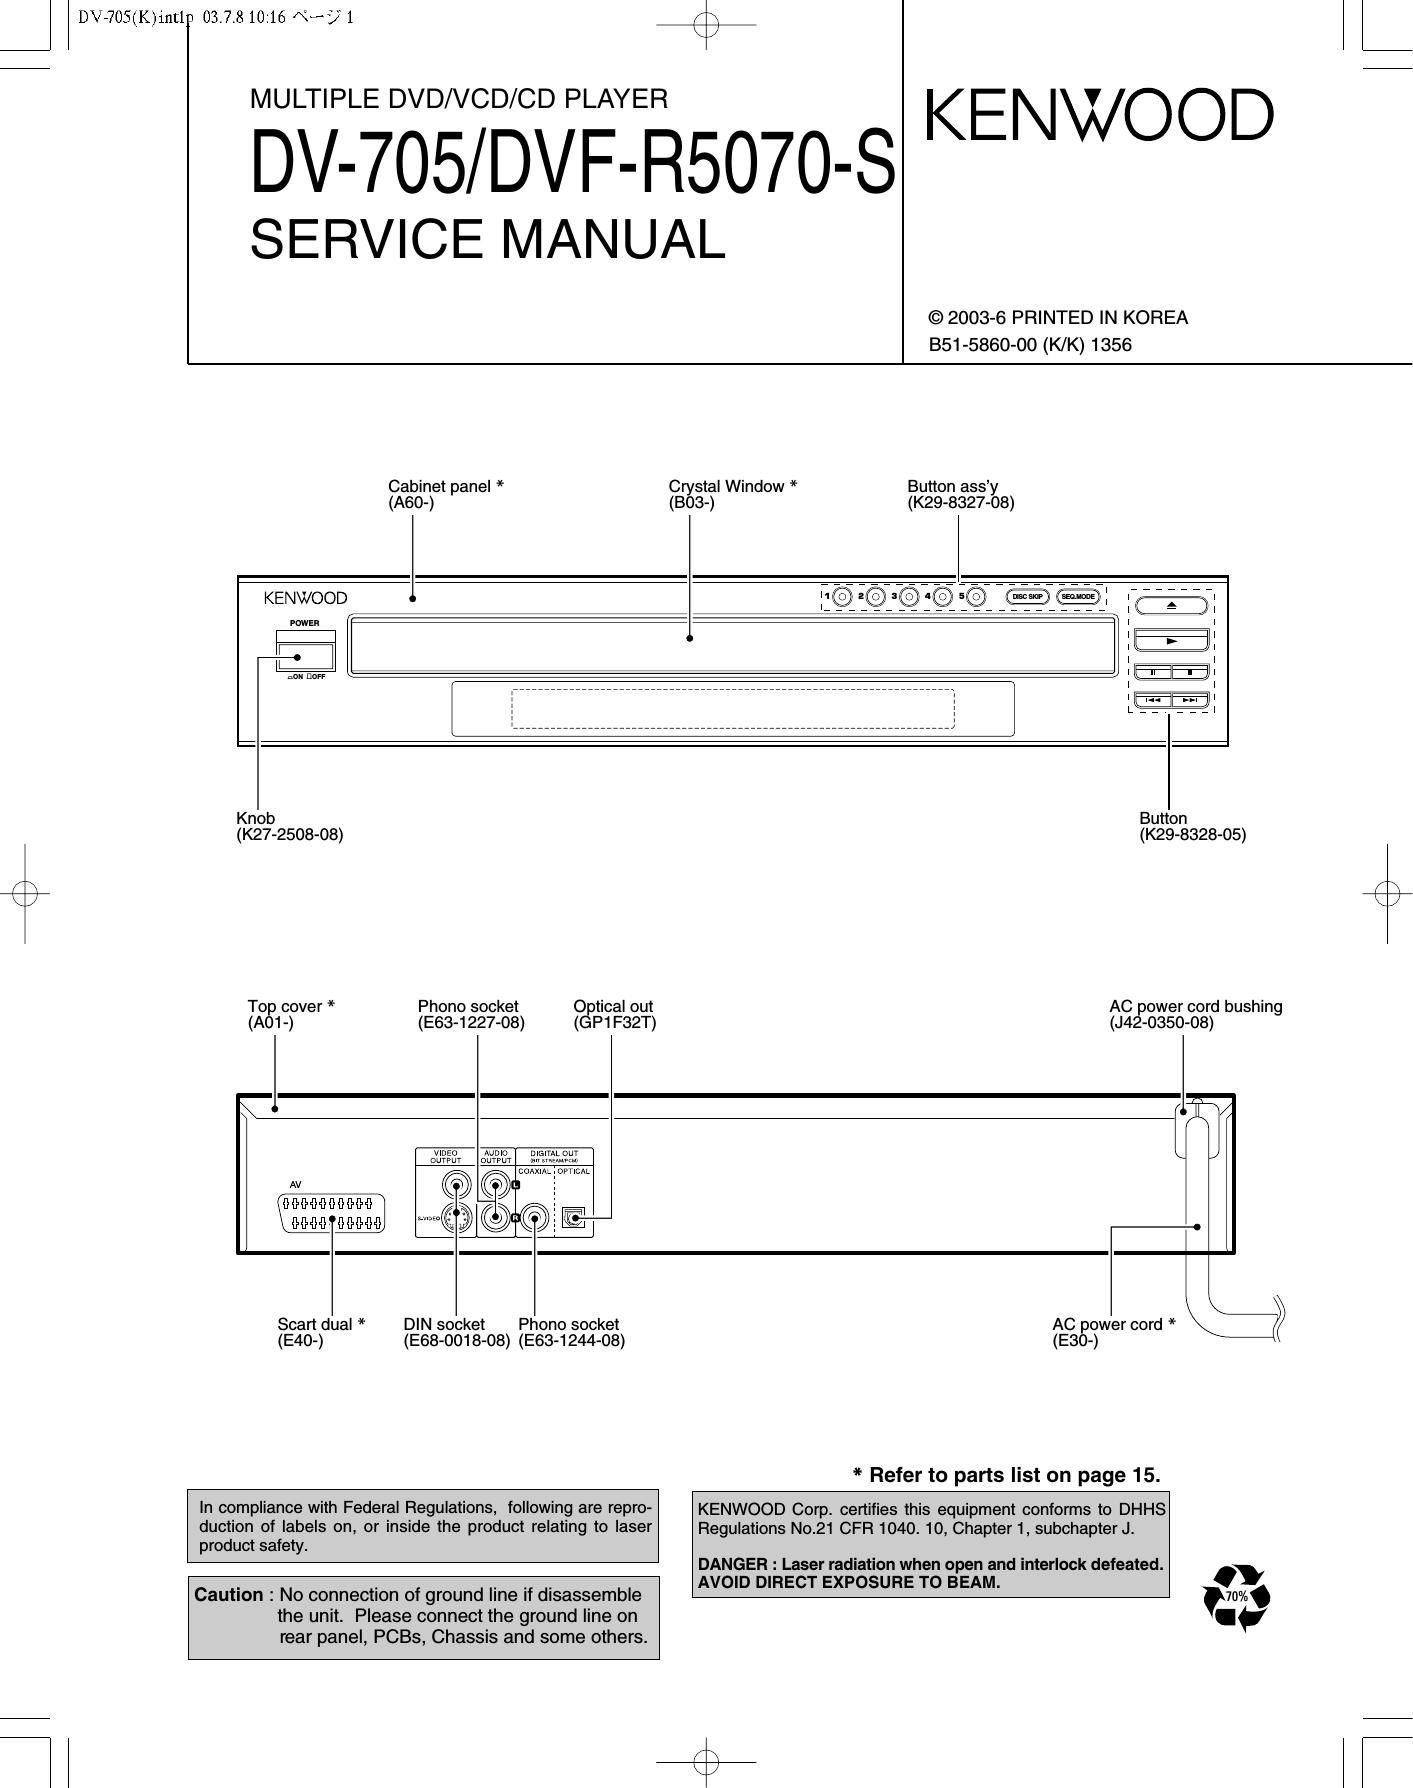 Kenwood DV 705 Service Manual